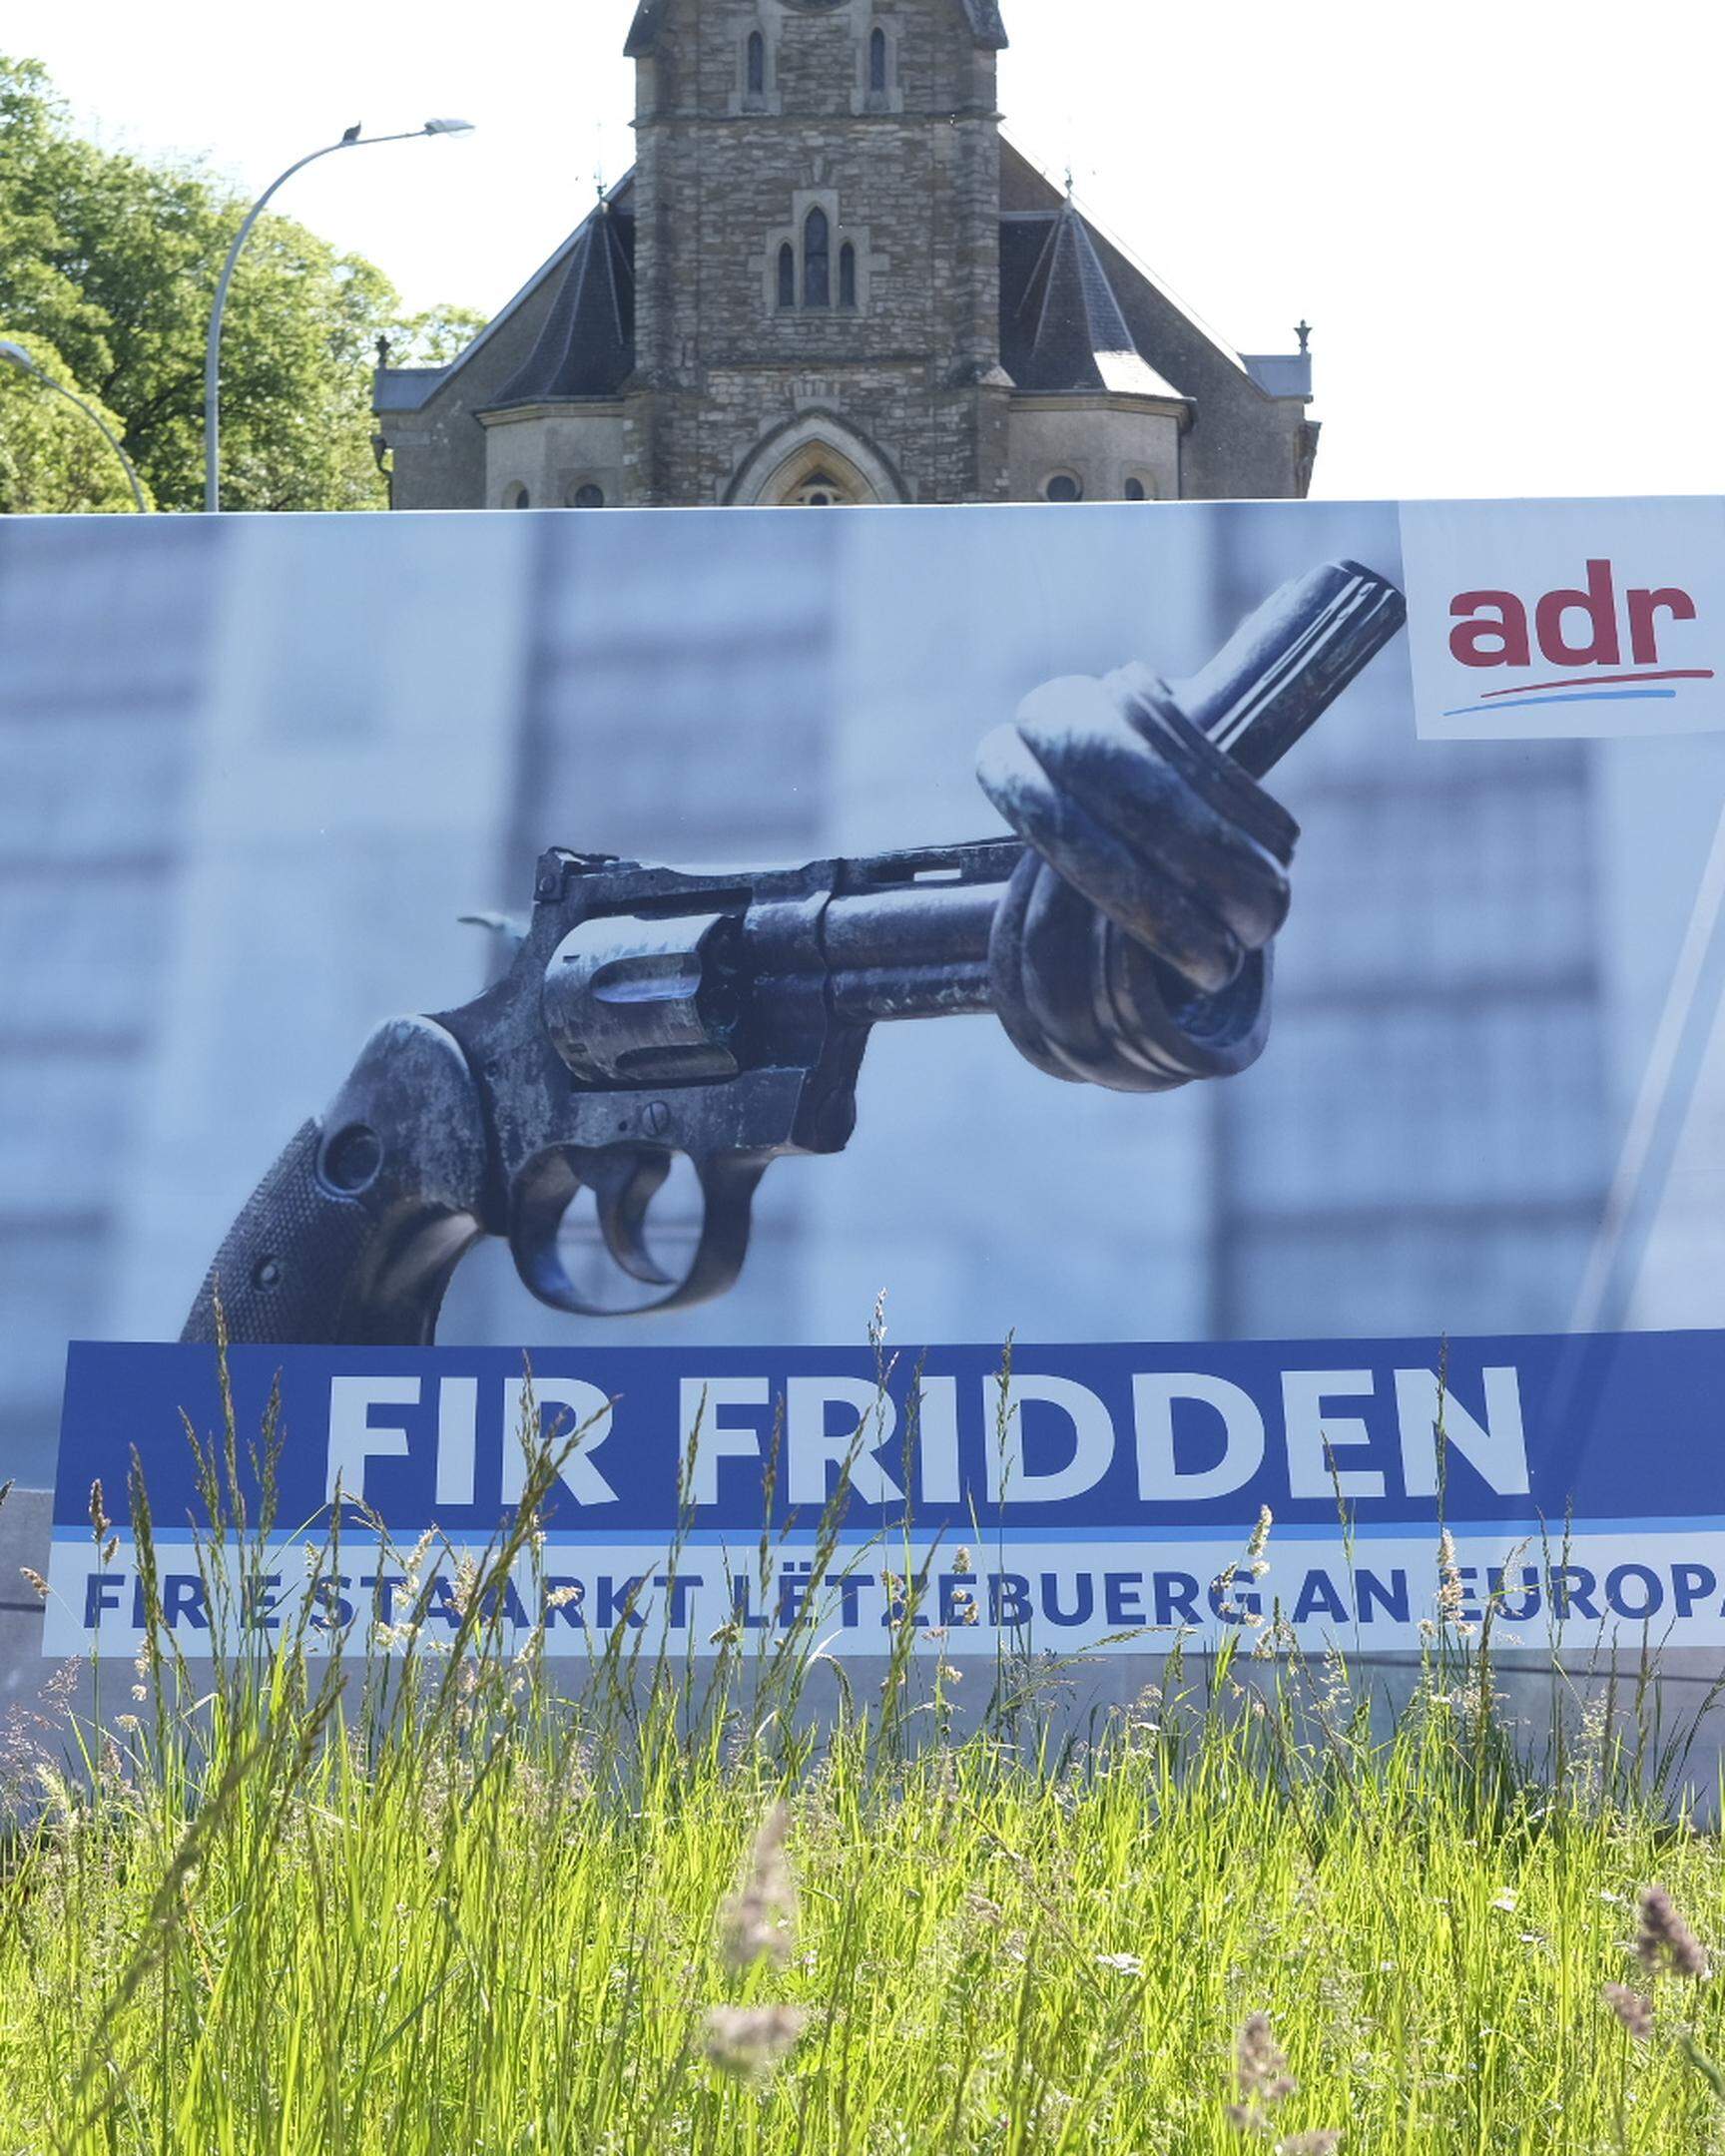 Verschwinden die ADR-Wahlplakate, deren Bildmotiv ungefragt benutzt wurde? Anwälte geben der Partei eine Frist, sie bis zum 31. Mai wegzuräumen.